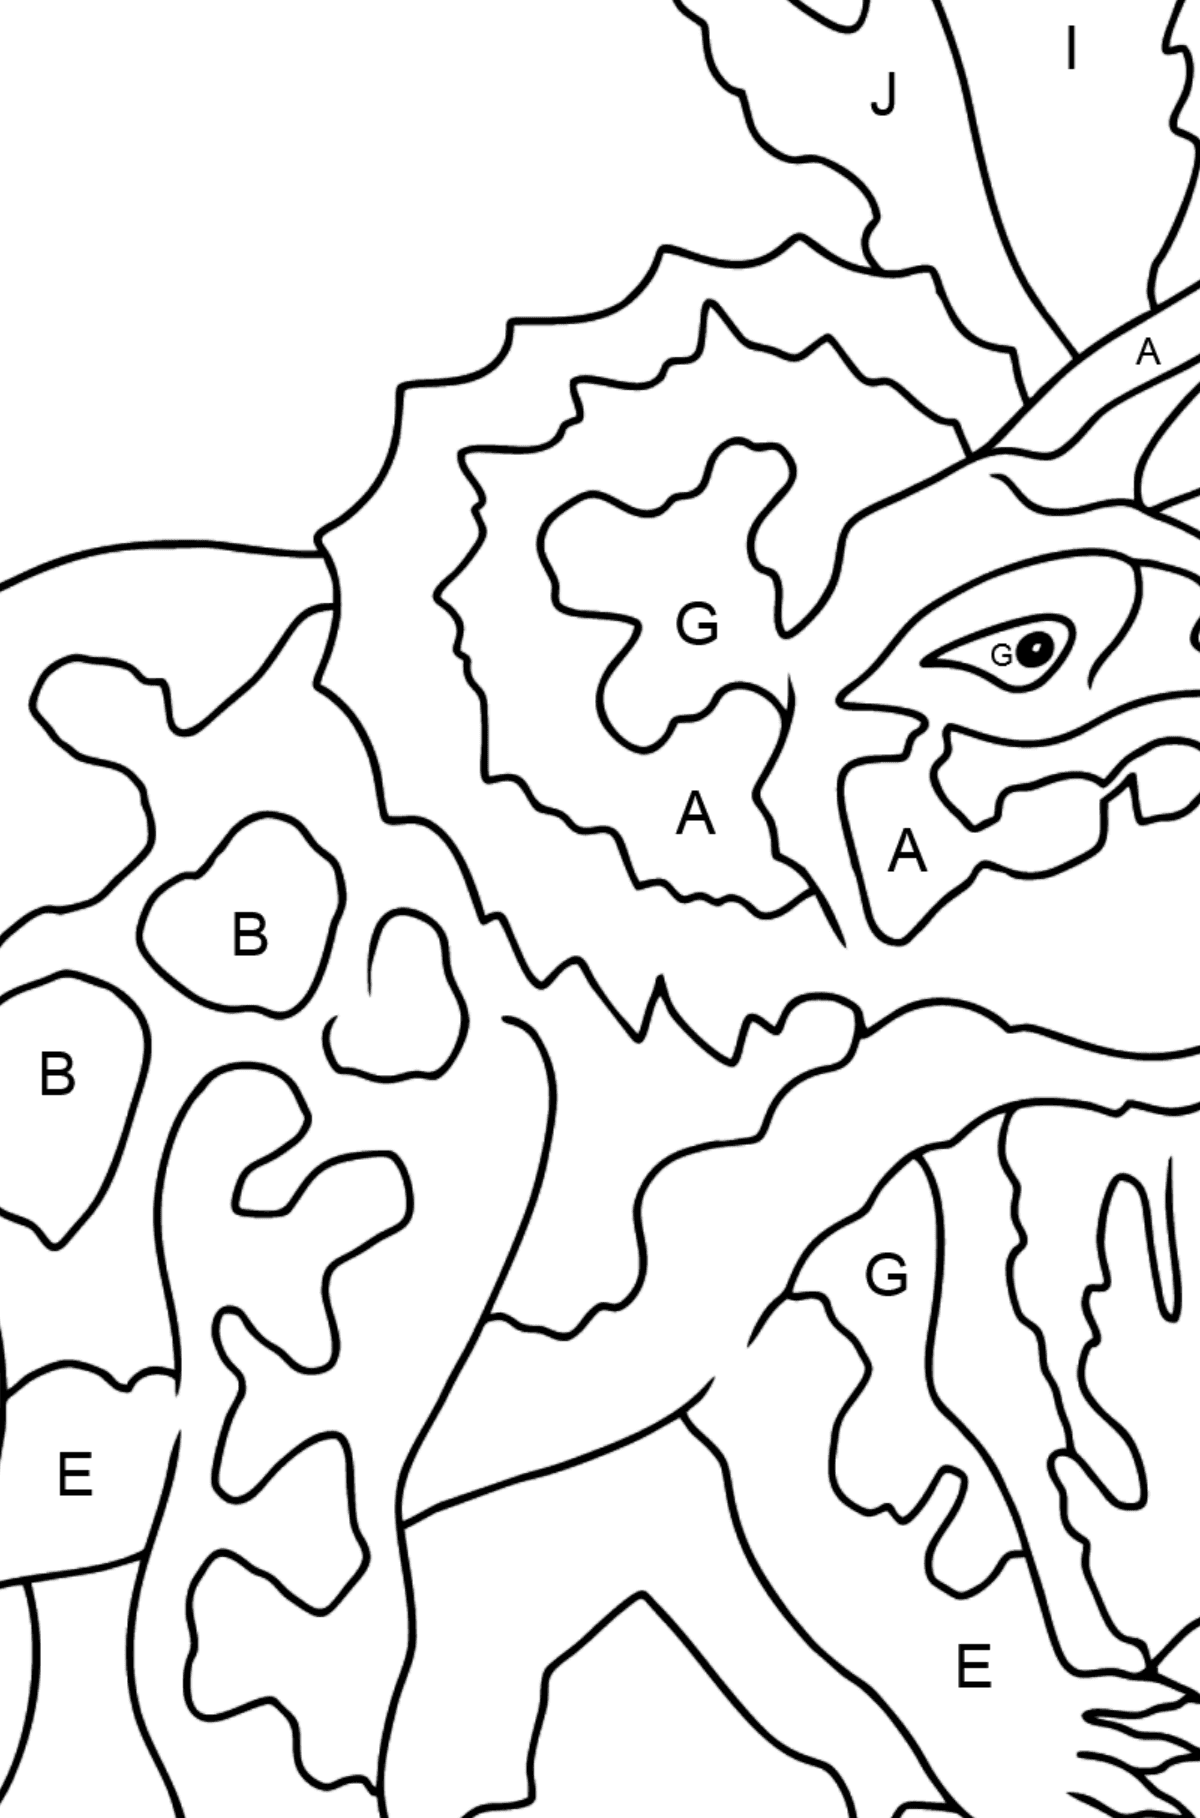 Desenho para colorir de triceratops - Colorir por Letras para Crianças